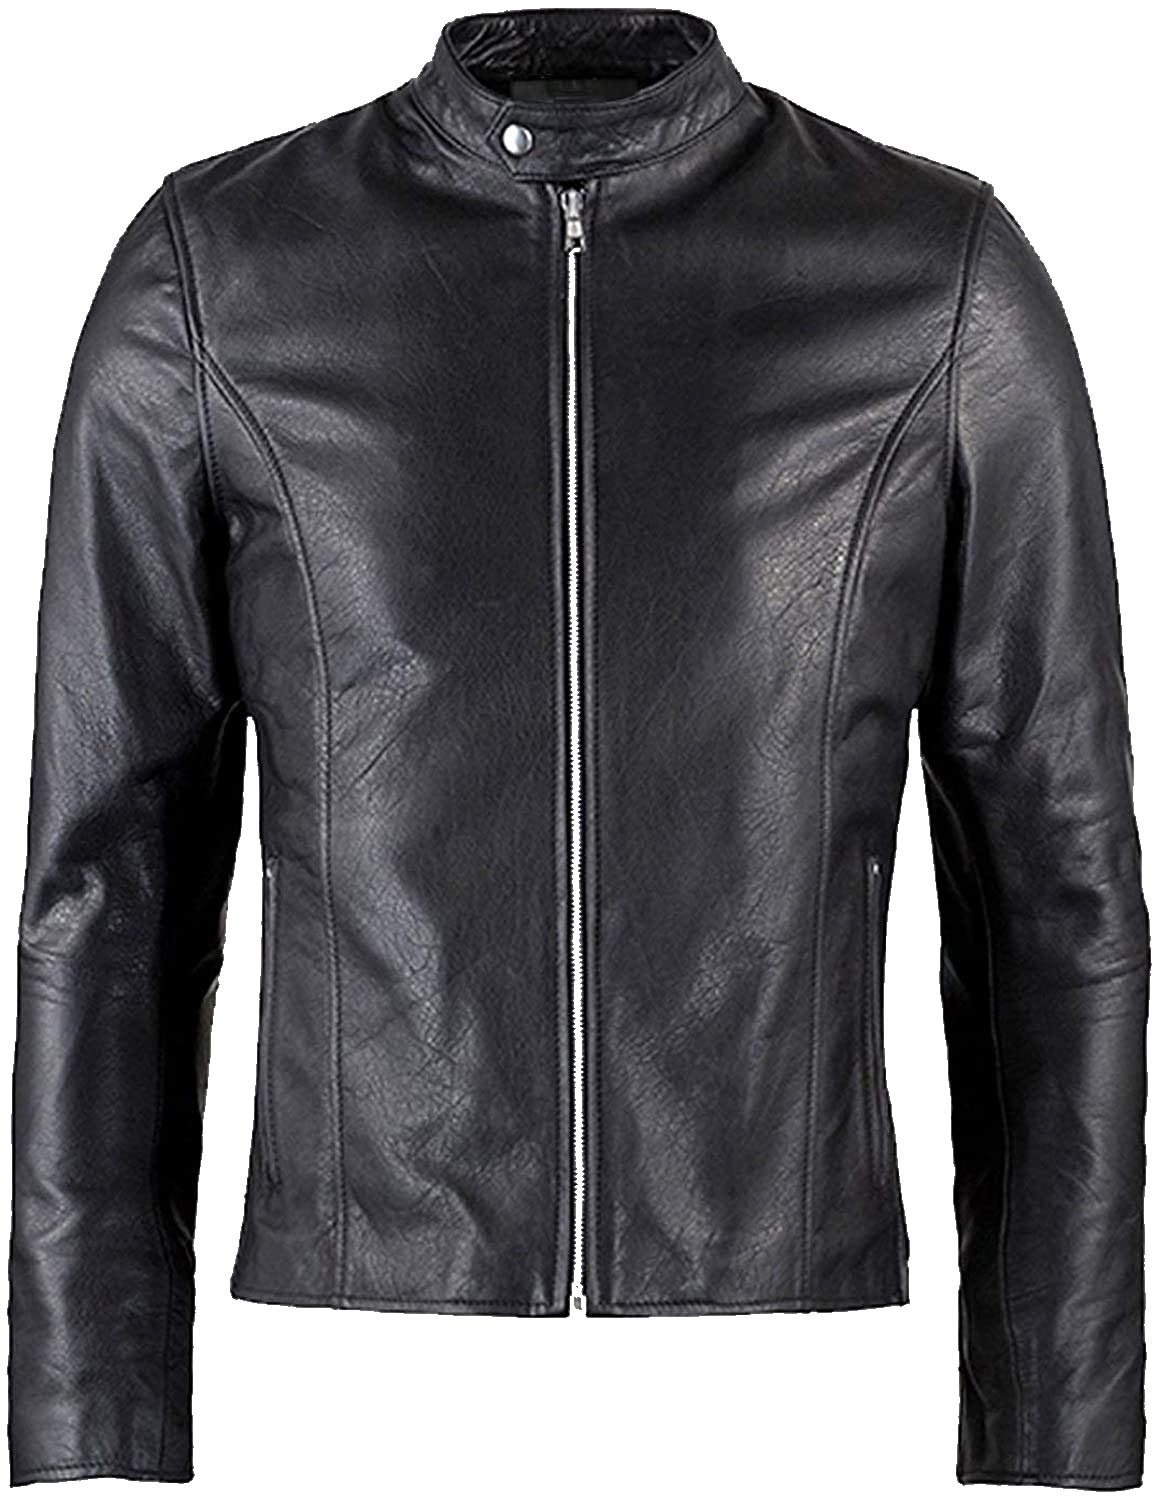 varsity leather jacket /.cafe racer leather jacket